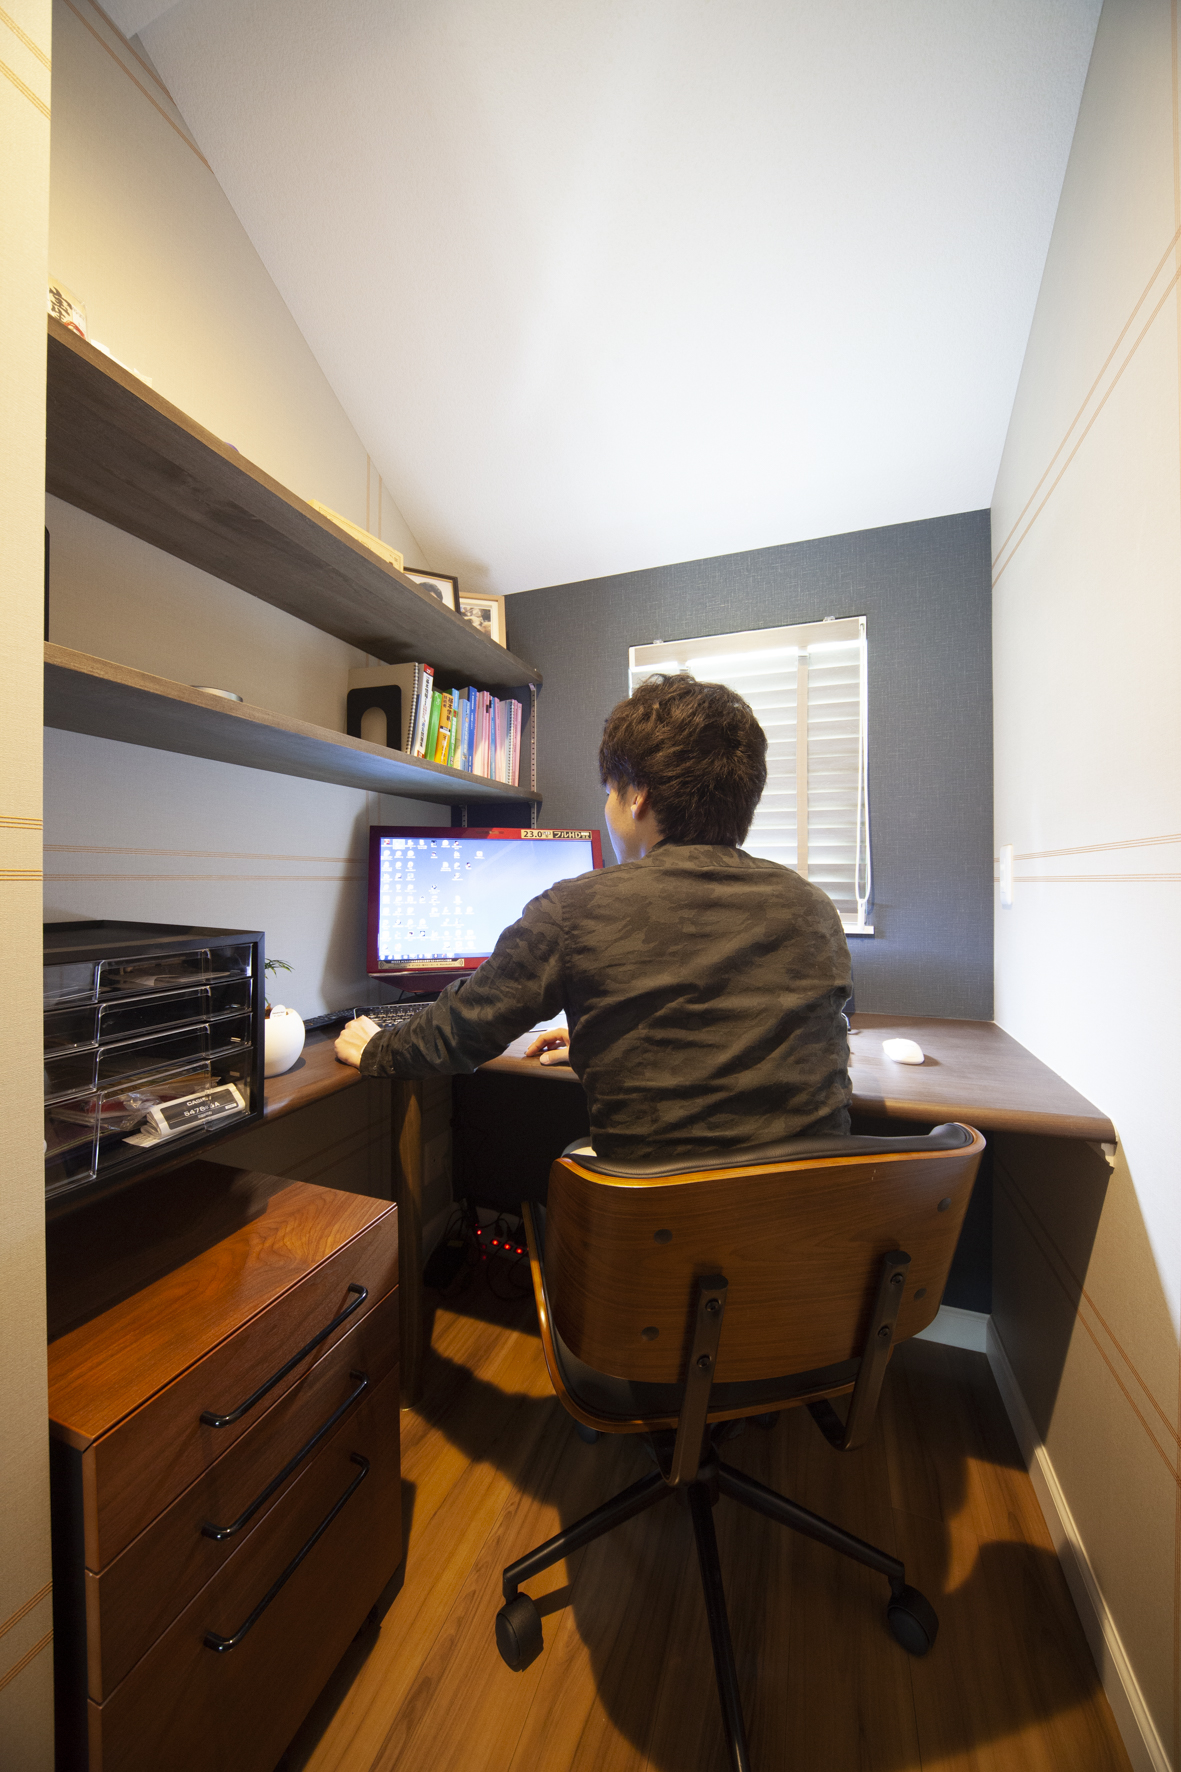 ゆとりある空間が心地よい書斎の作り方と実例を紹介